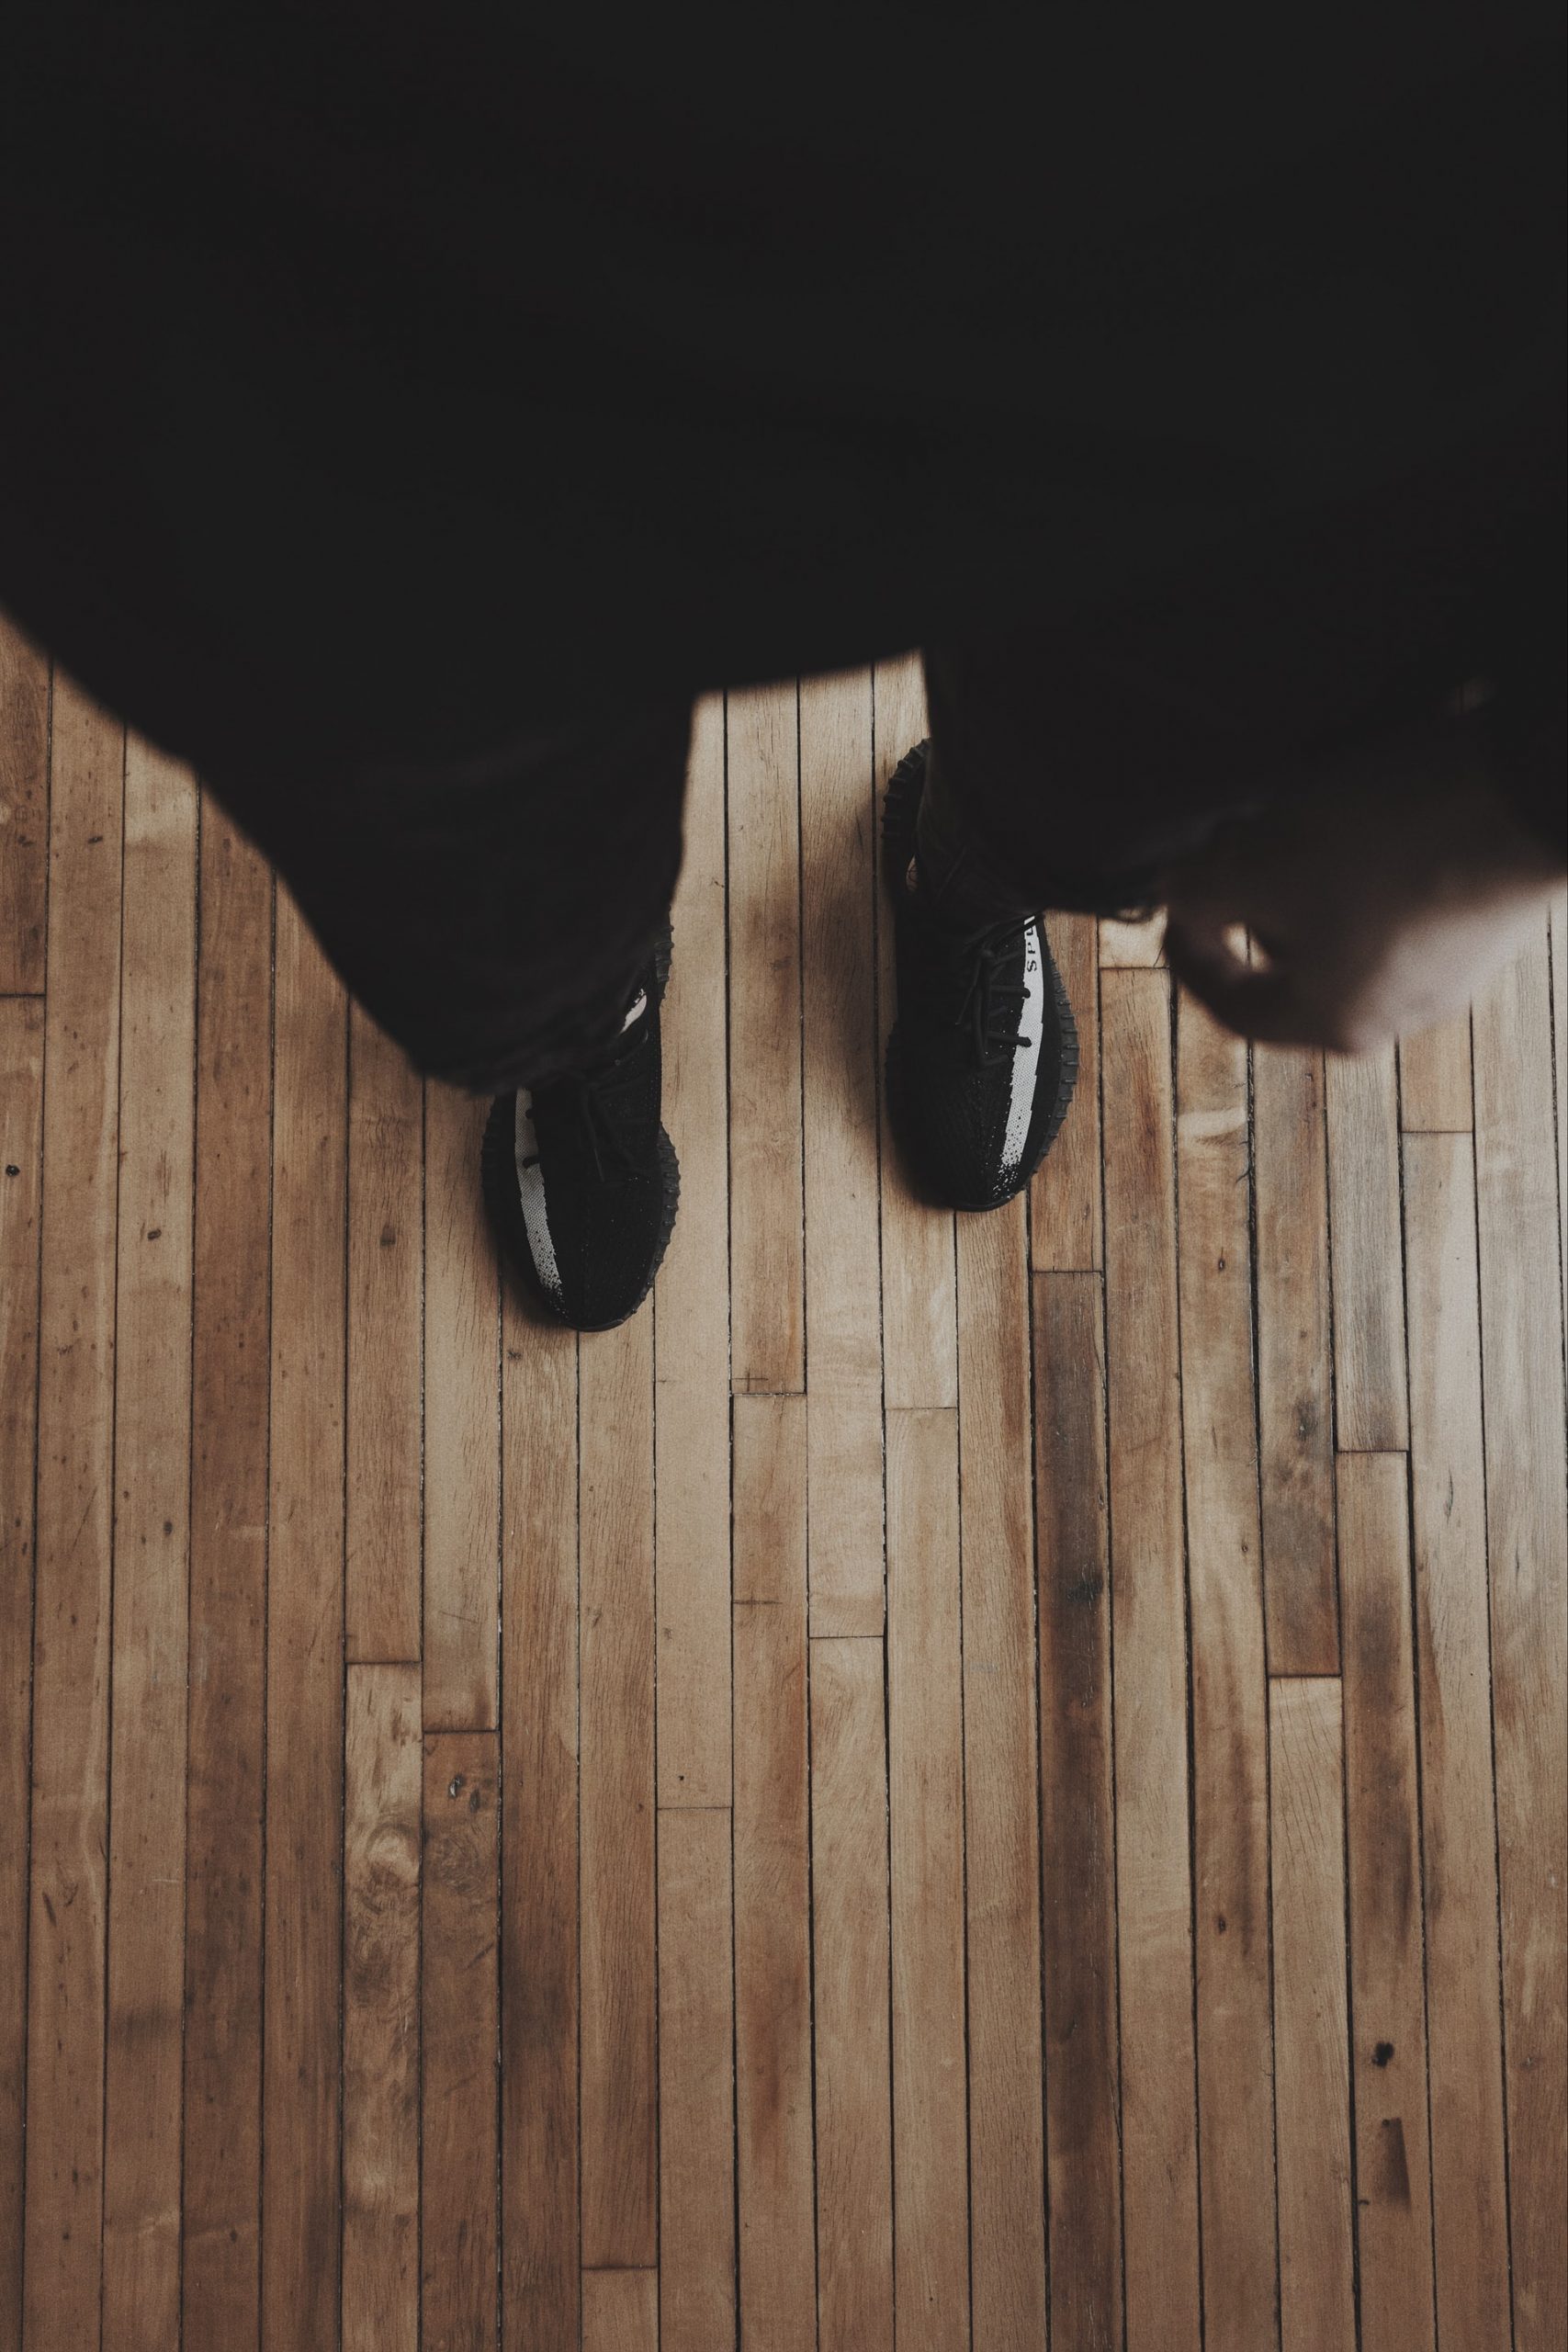 A pair of feet on a hardwood floor